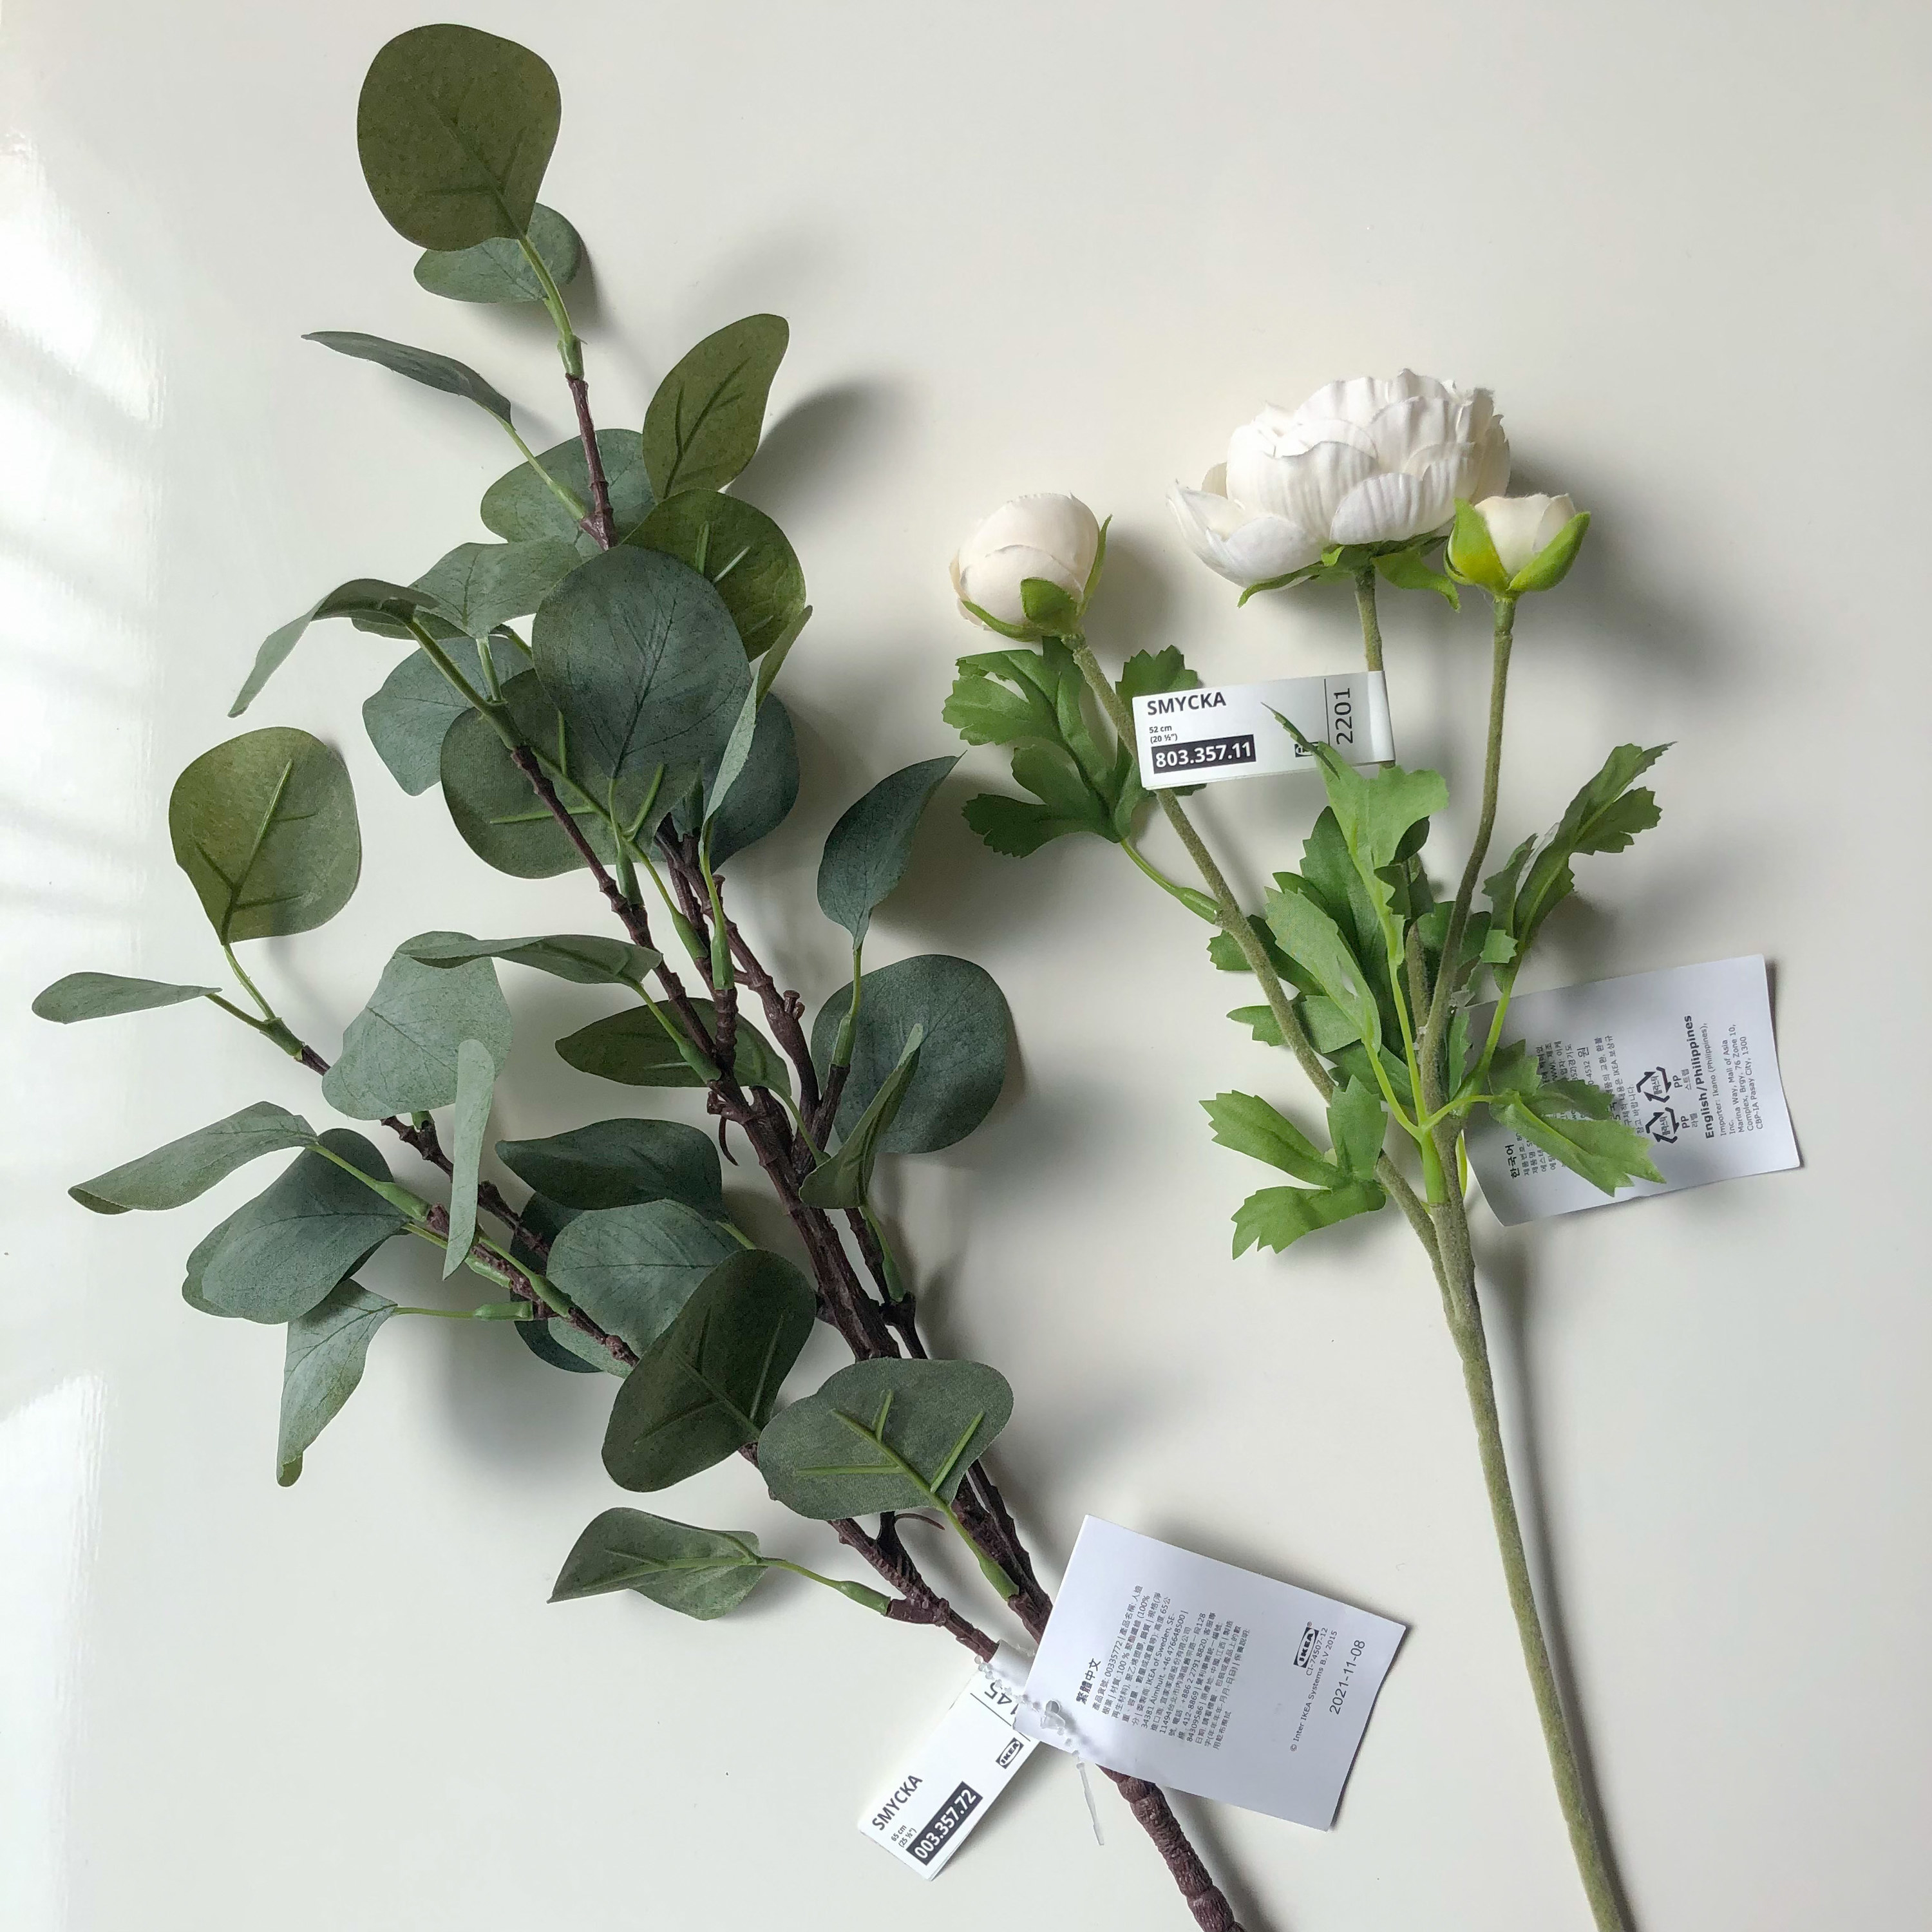 IKEAの高見えインテリア「フェイクリーフ  ユーカリ / グリーン」「造花 ラナンキュラス / ホワイト」